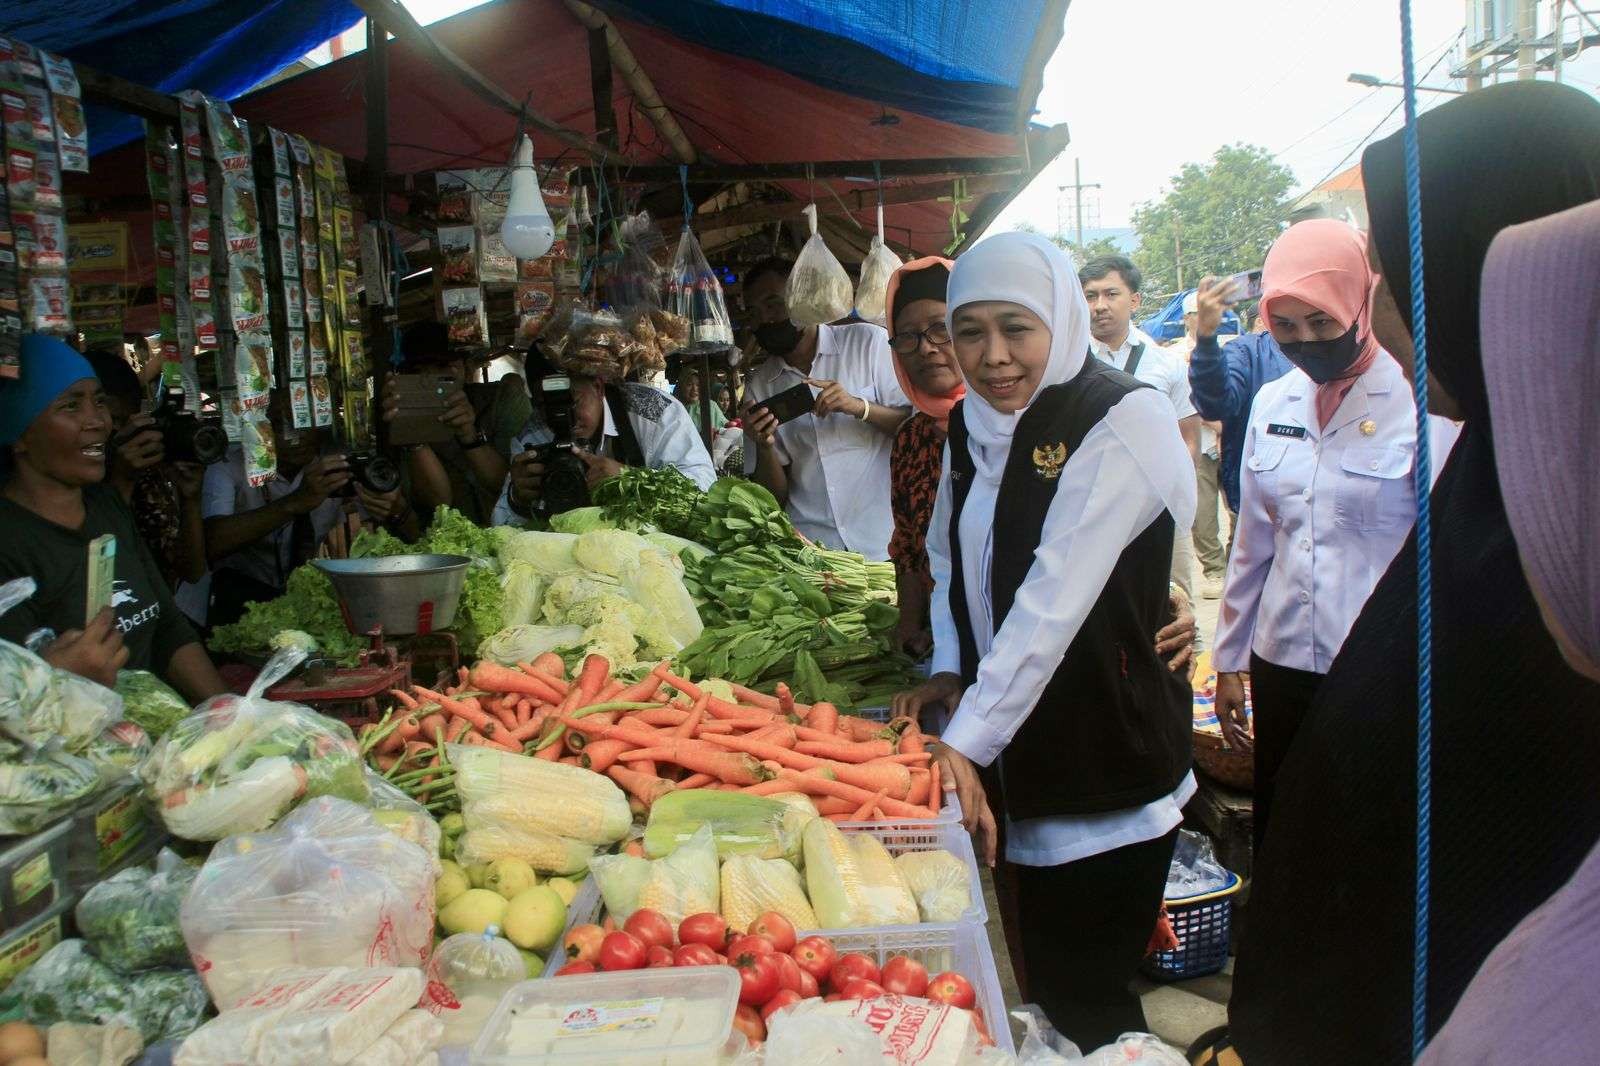 Gubernur Jawa Timur Khofifah Indar Parawansa kembali mengunjungi Kota Pasuruan untuk mengecek harga kebutuhan pokok. Pasar Besar Kota Pasuruan menjadi lokasi kunjungannya. (Foto: Humas Pemkot Pasuruan)